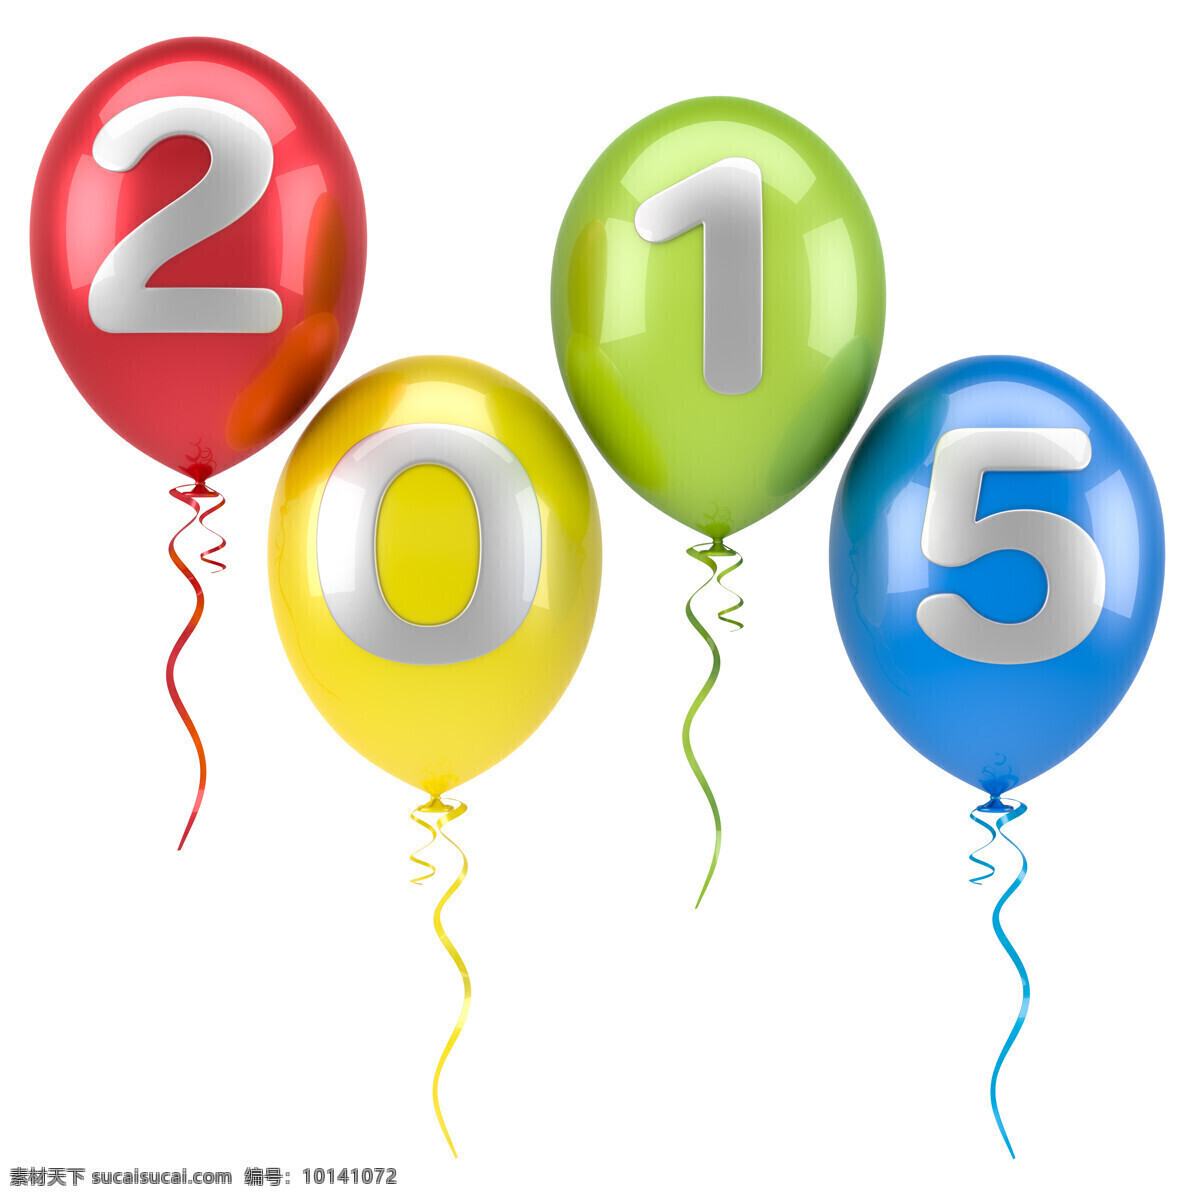 2015 彩色 气球 新年 字体设计 彩色气球 丝带 节日庆典 生活百科